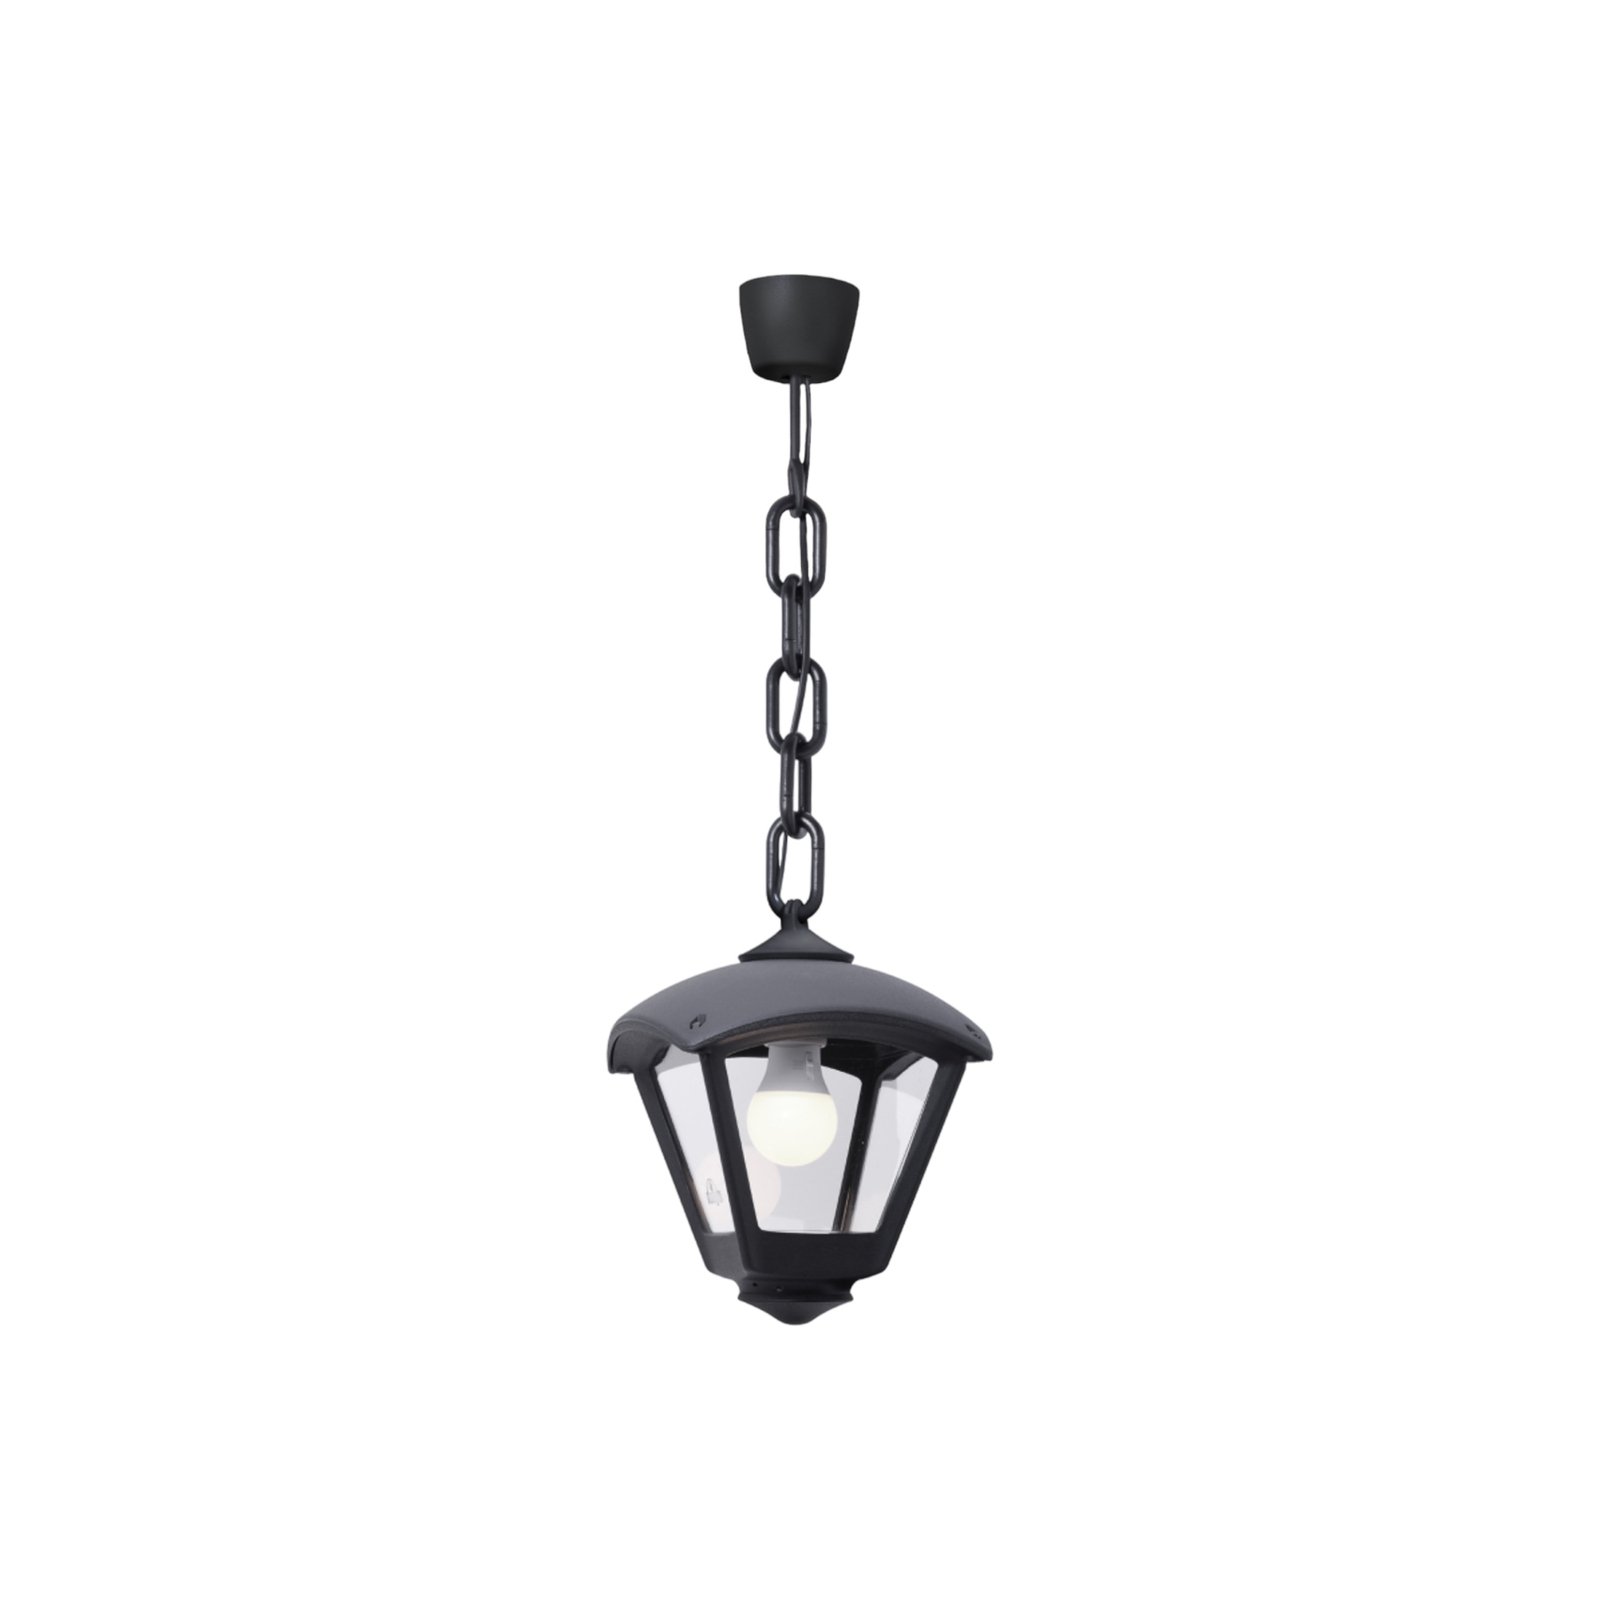 Lampă suspendată pentru exterior Sicar/Dario negru, capac transparent, E27